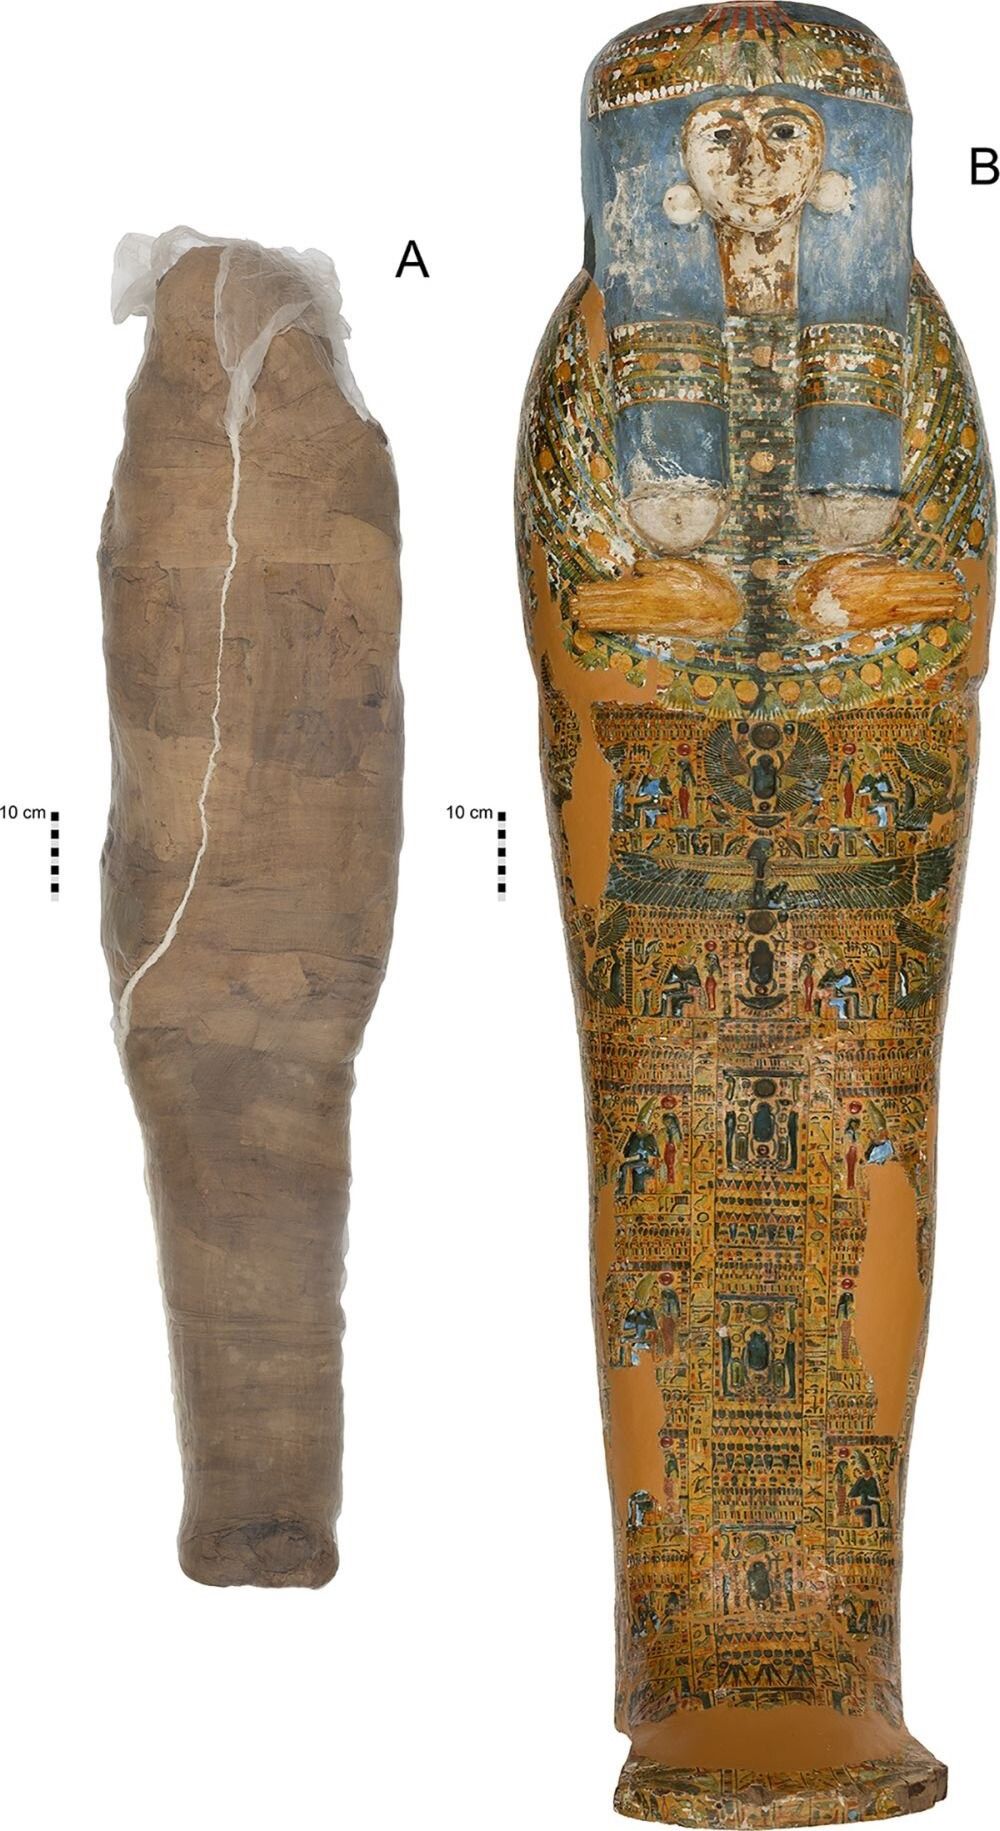 El método 'low cost' de los antiguos egipcios para envolver a las momias